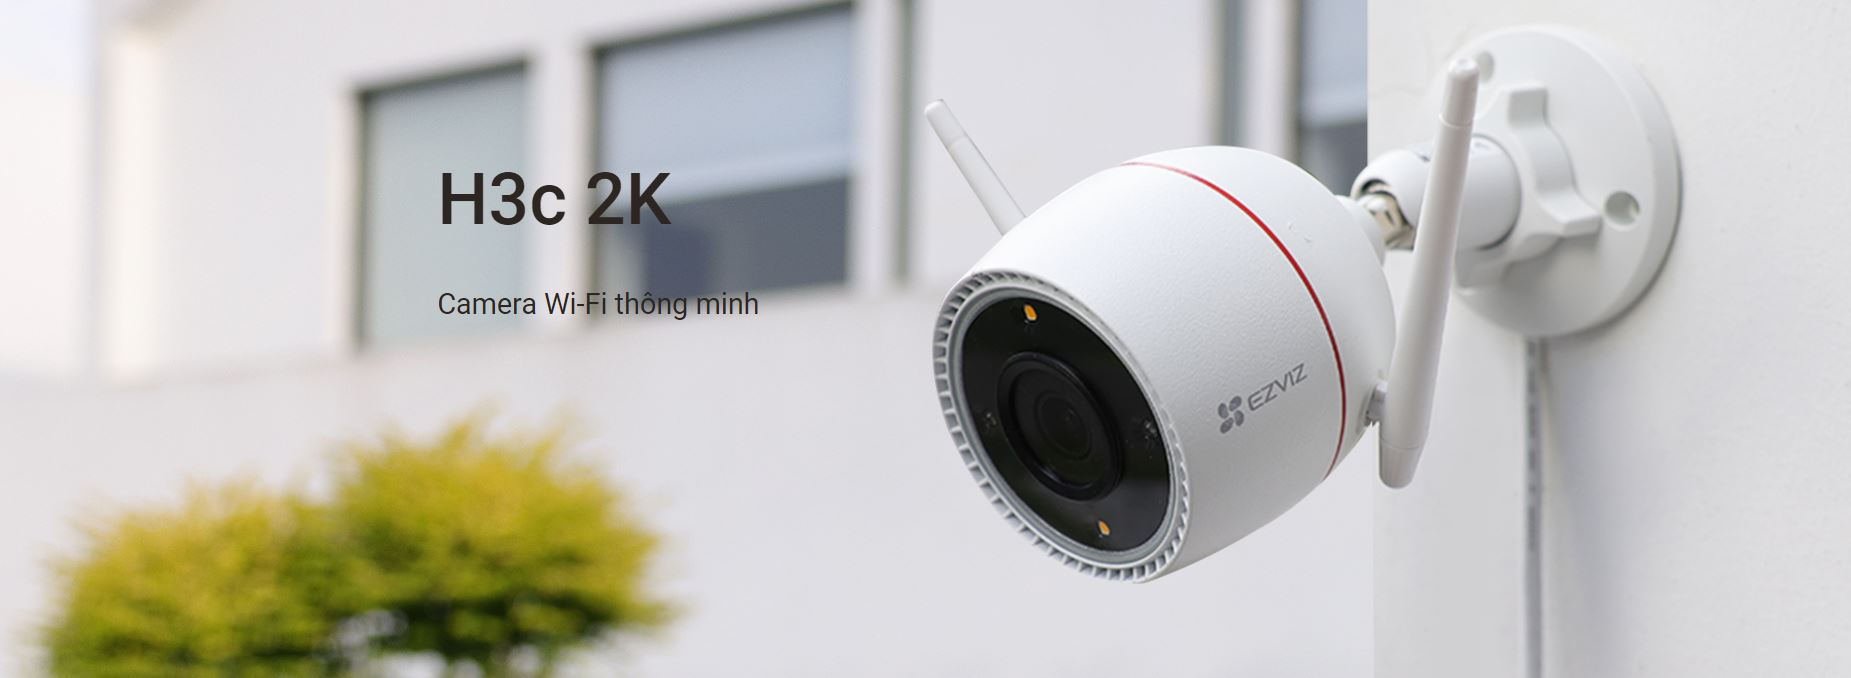 Camera EZVIZ H3C 4MP 2K COLOR - thiết kế nhỏ gọn